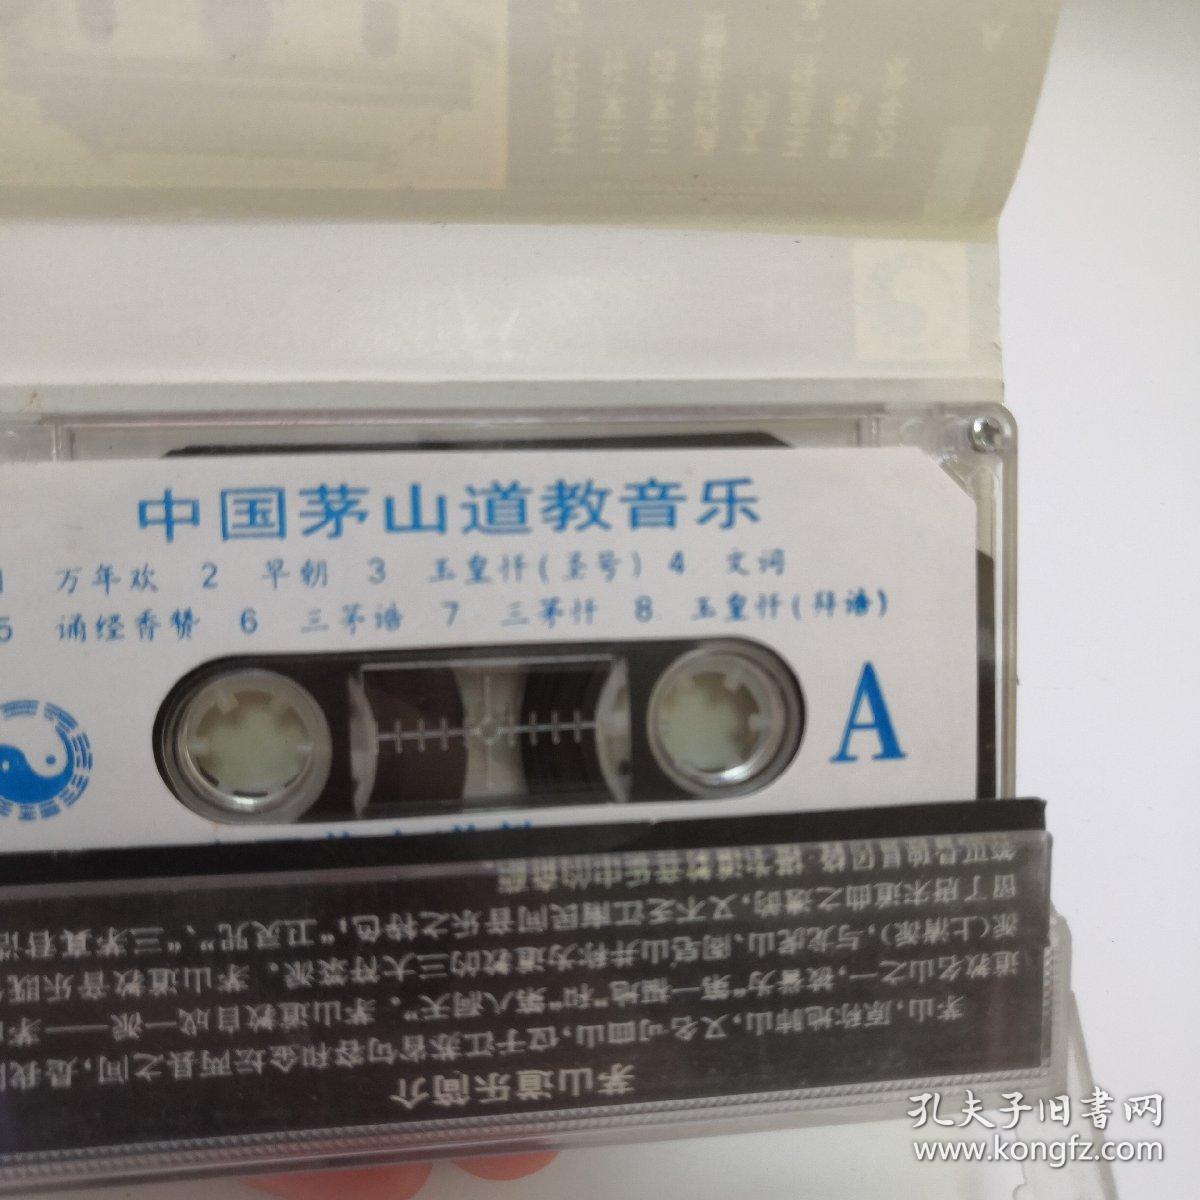 磁带：中国茅山道教音乐